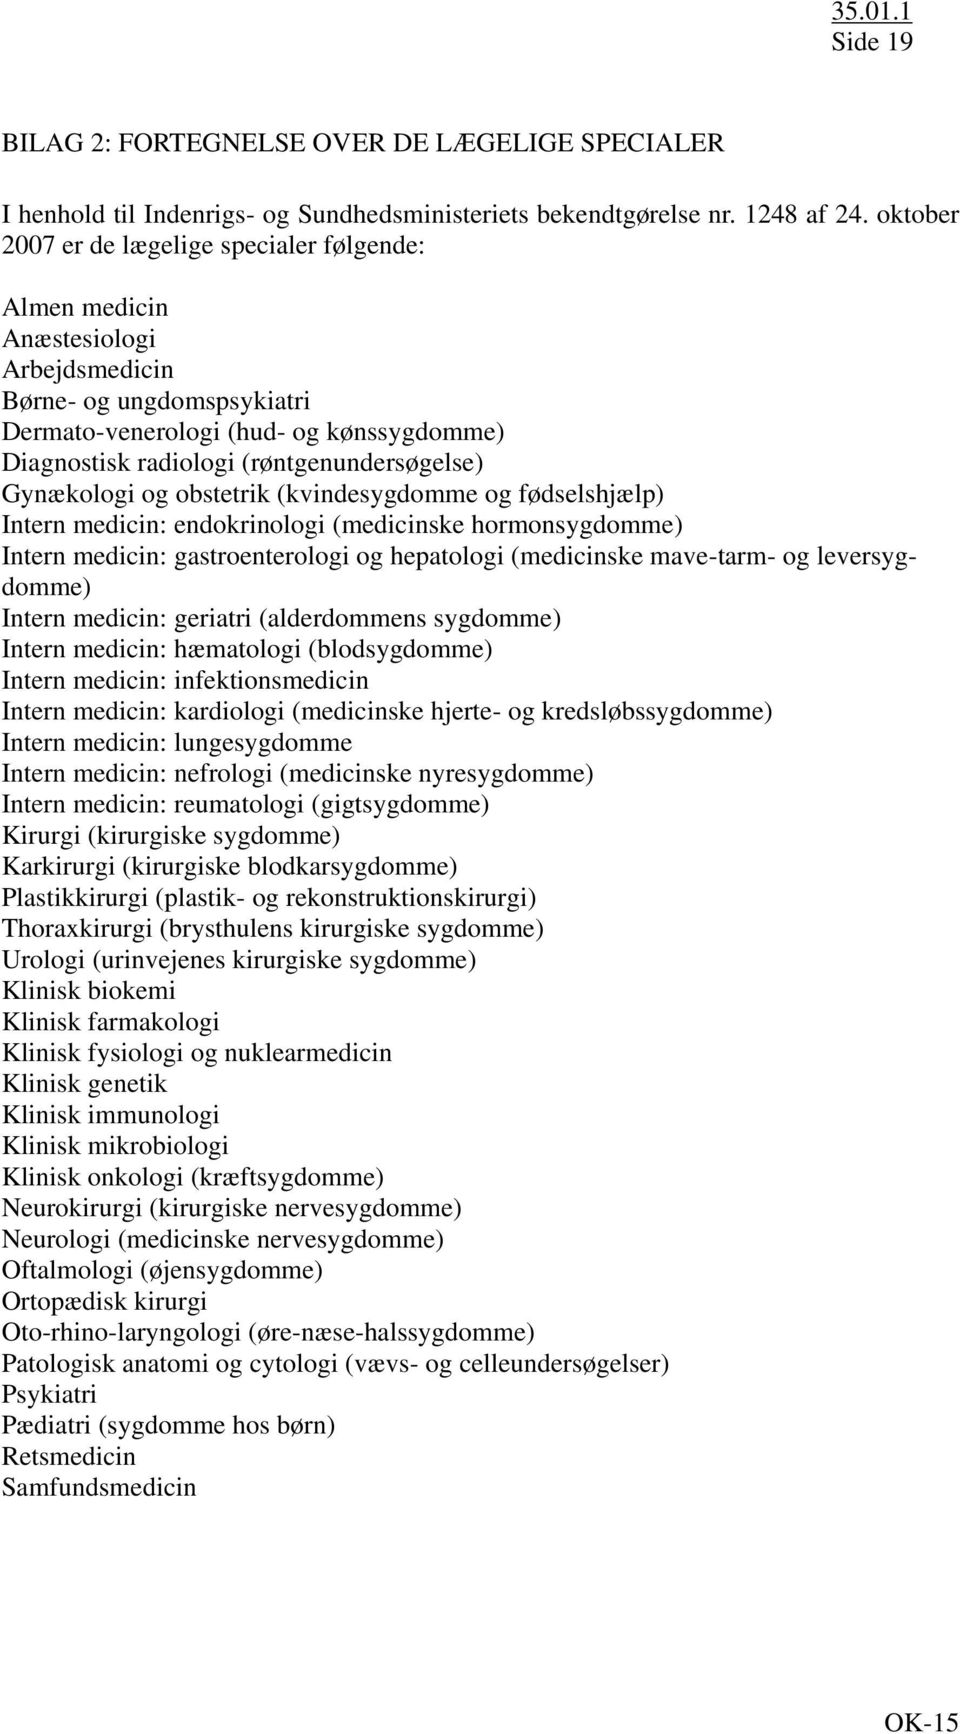 (røntgenundersøgelse) Gynækologi og obstetrik (kvindesygdomme og fødselshjælp) Intern medicin: endokrinologi (medicinske hormonsygdomme) Intern medicin: gastroenterologi og hepatologi (medicinske